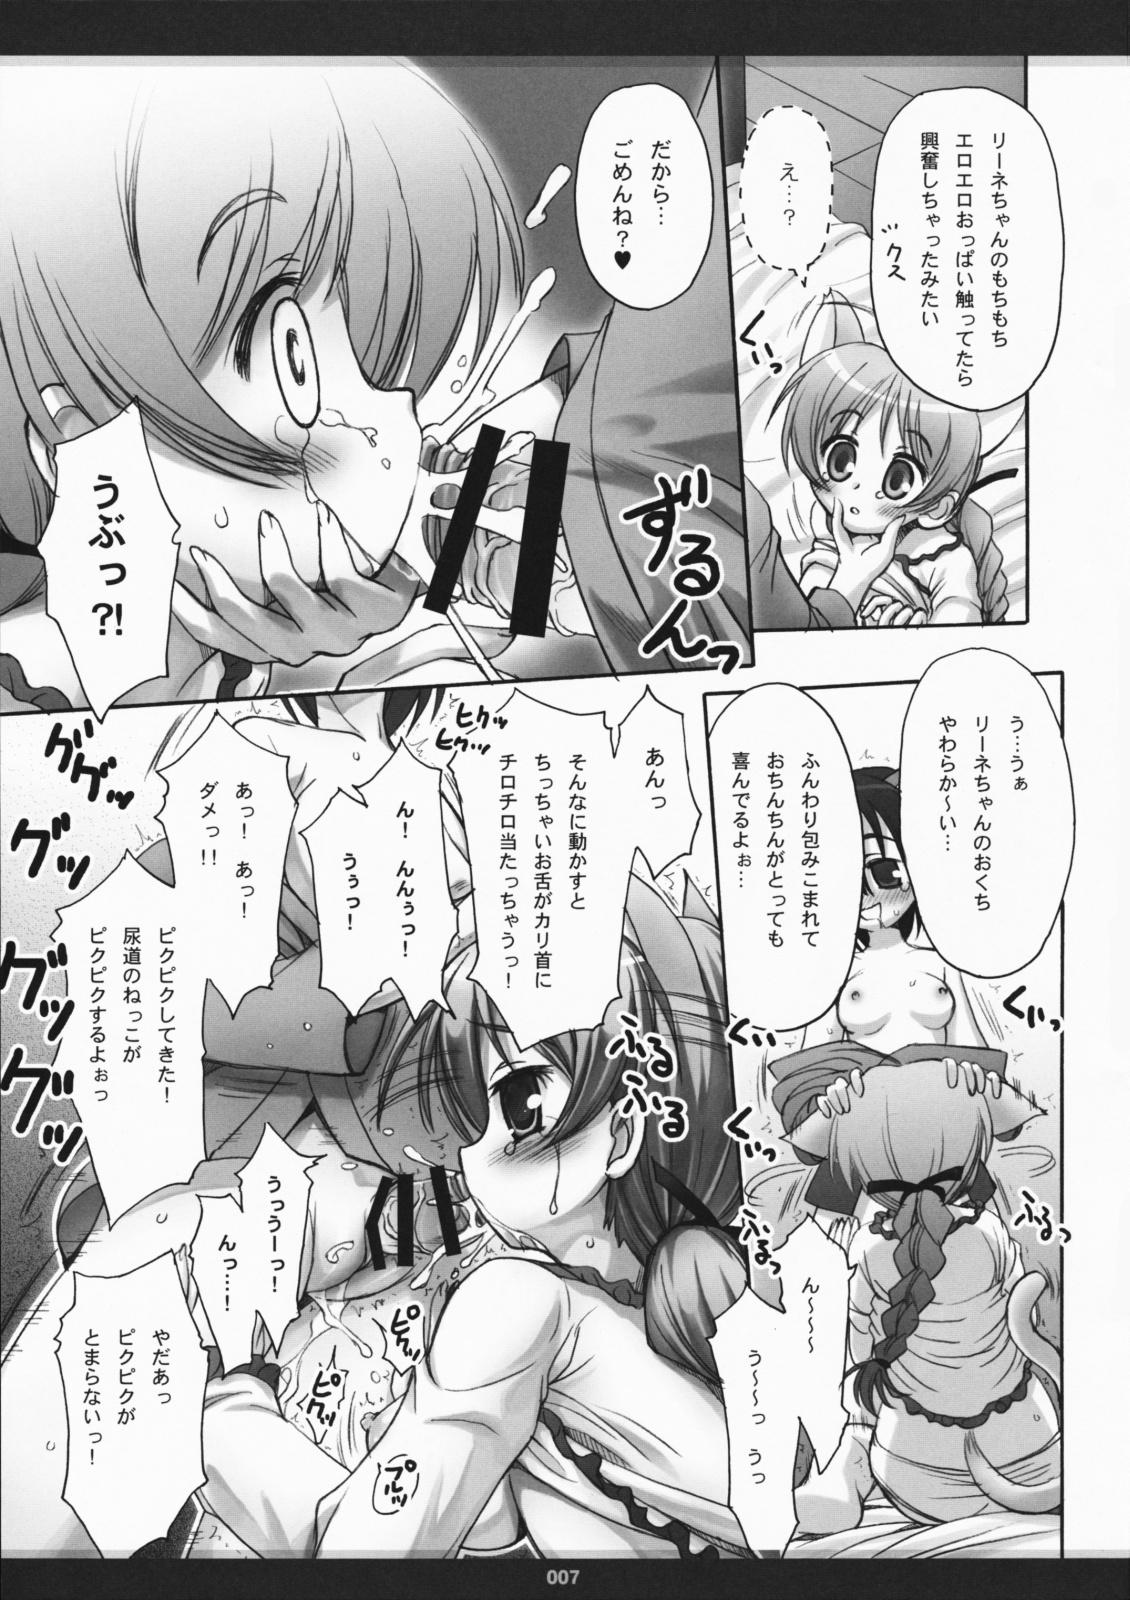 Cheat Hoshifuru Yoru ni Oppai o, Kimi to - Strike witches Sperm - Page 6